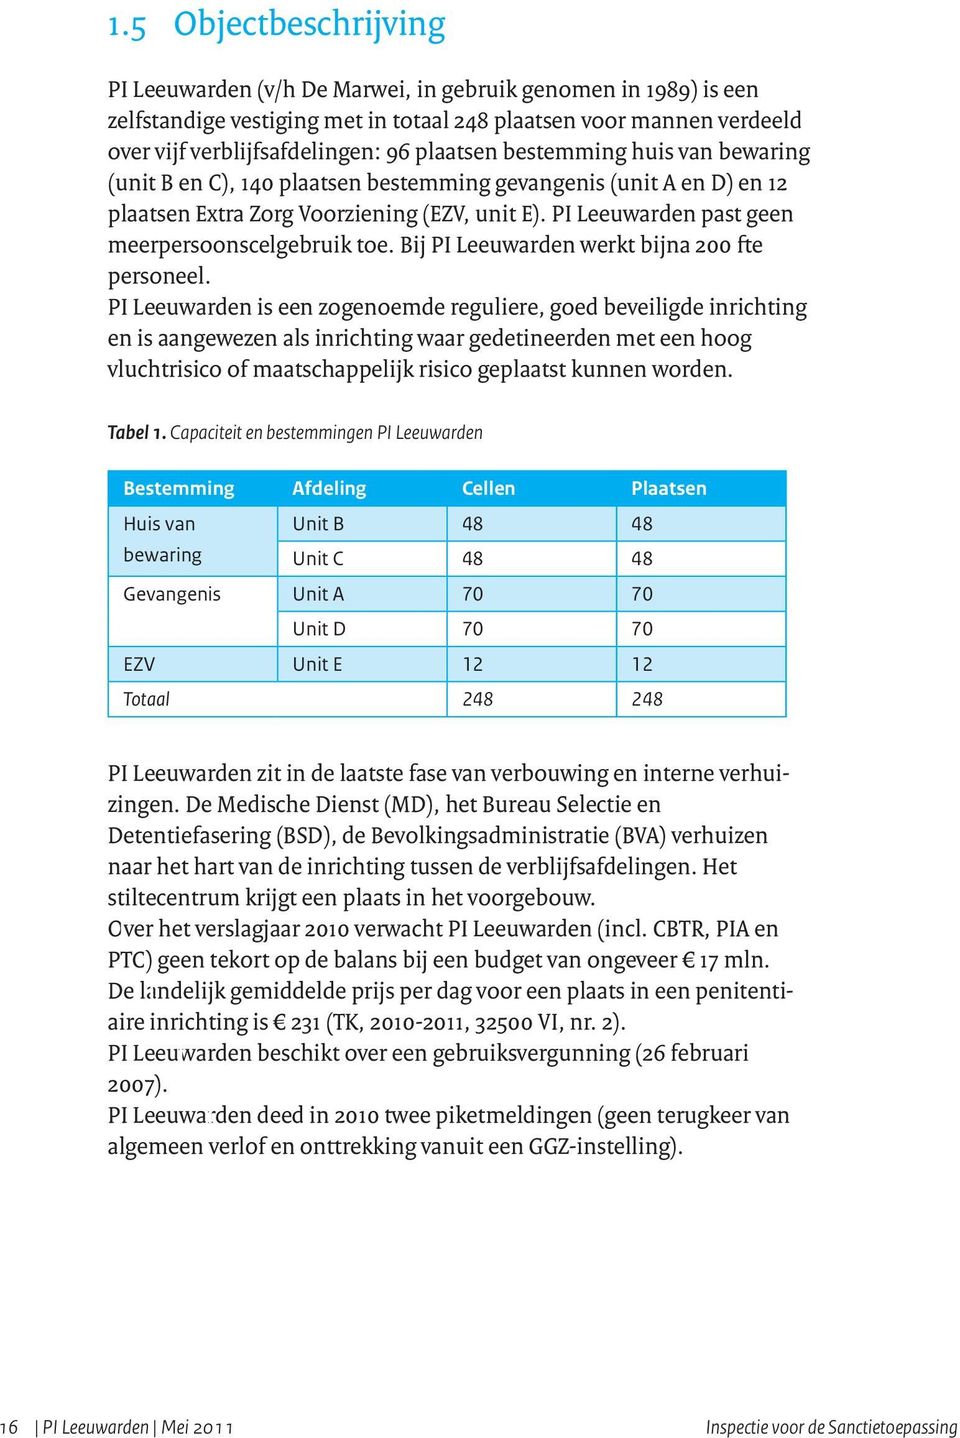 PI Leeuwarden past geen meerpersoonscelgebruik toe. Bij PI Leeuwarden werkt bijna 200 fte personeel.